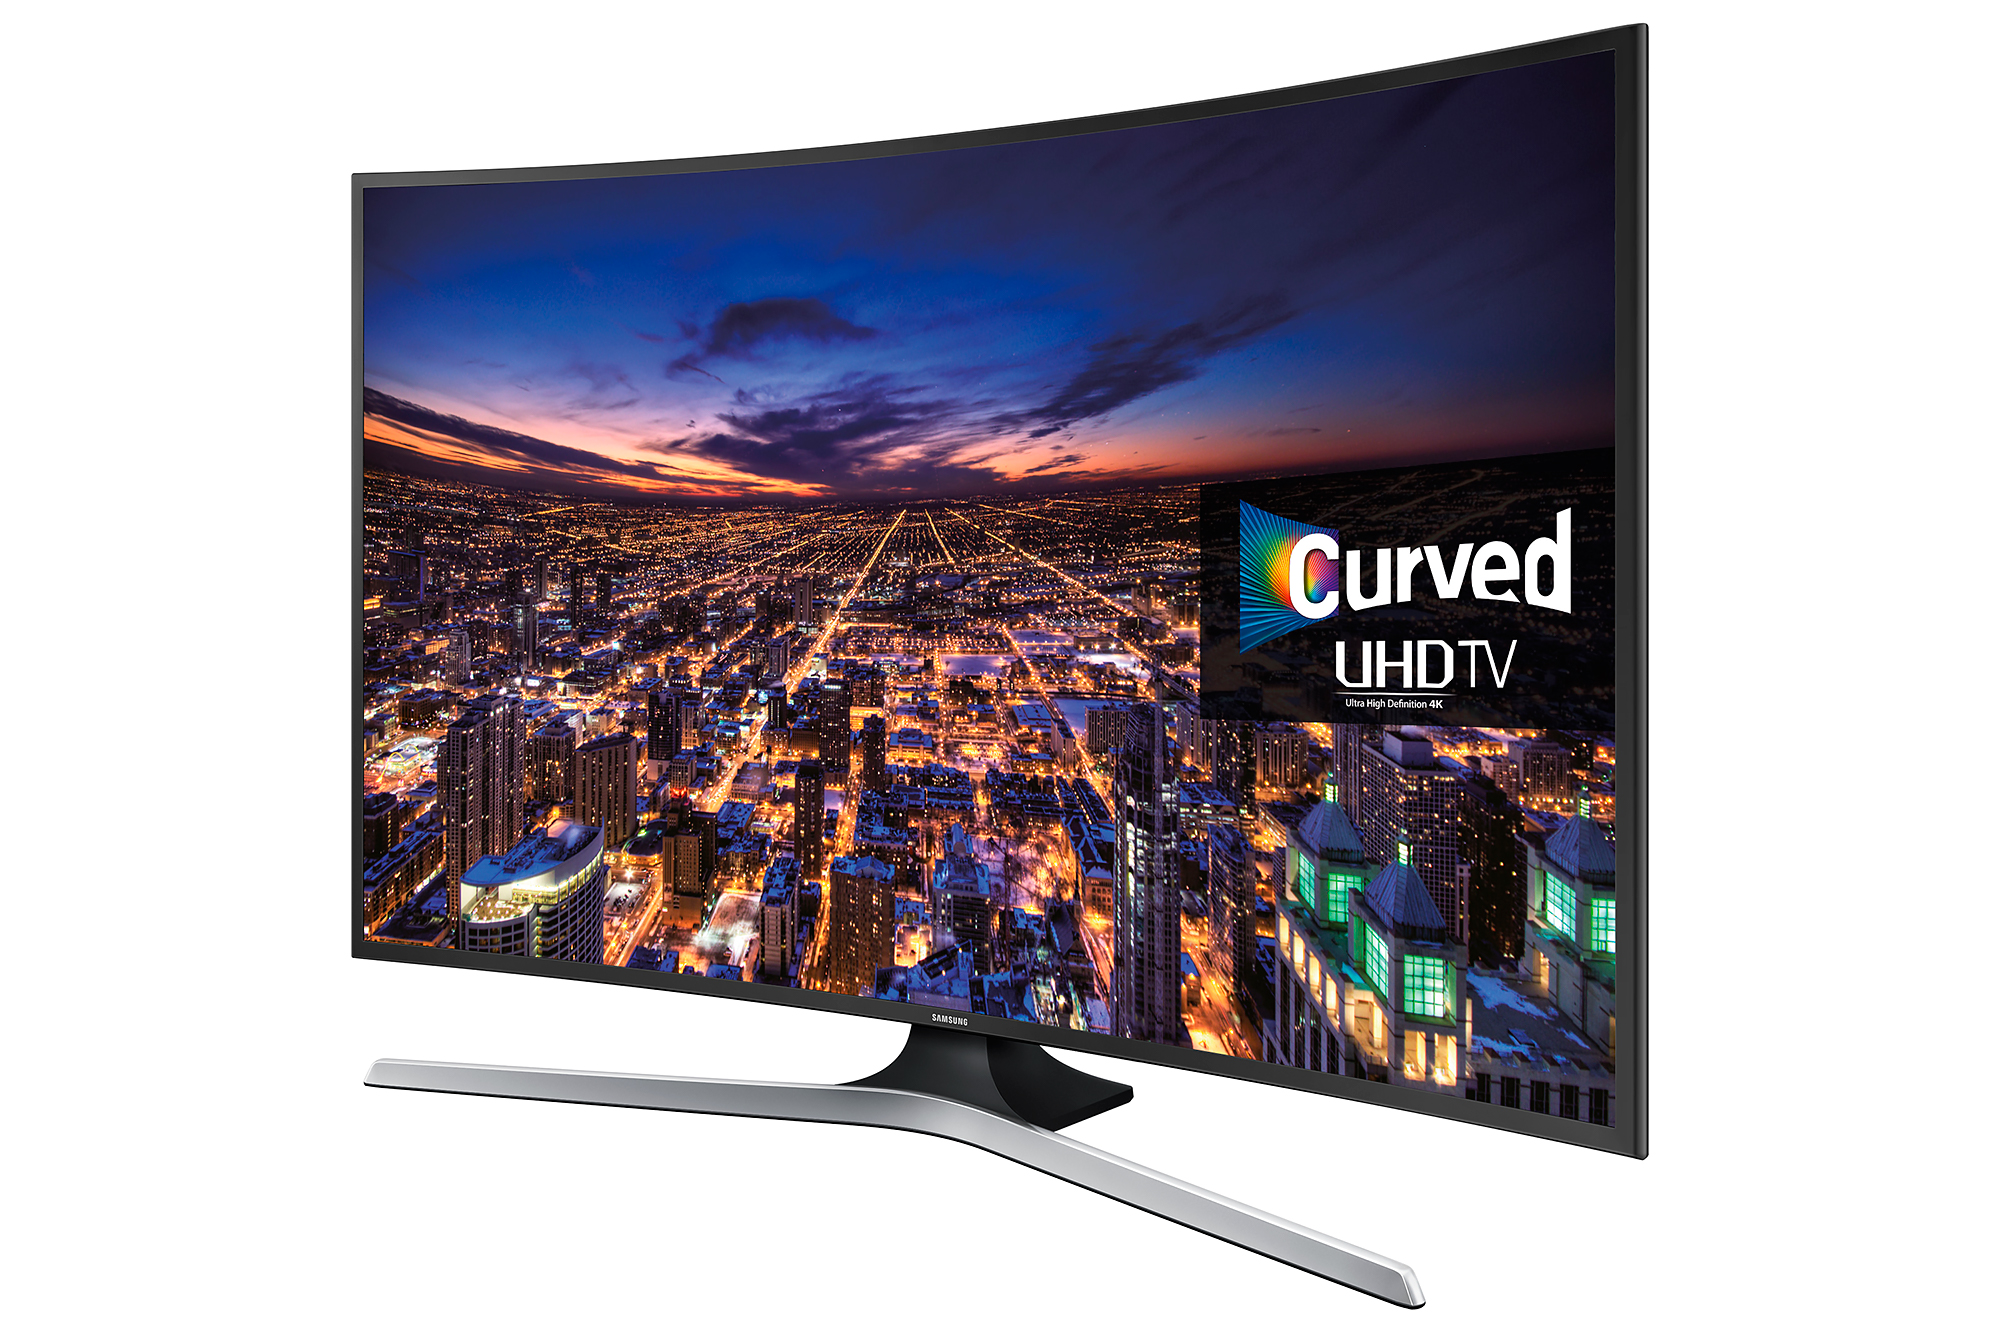 Телевизоры самсунг краснодар. Samsung 6 Series 40 Smart TV. Samsung Curved UHD TV 6 Series 40.